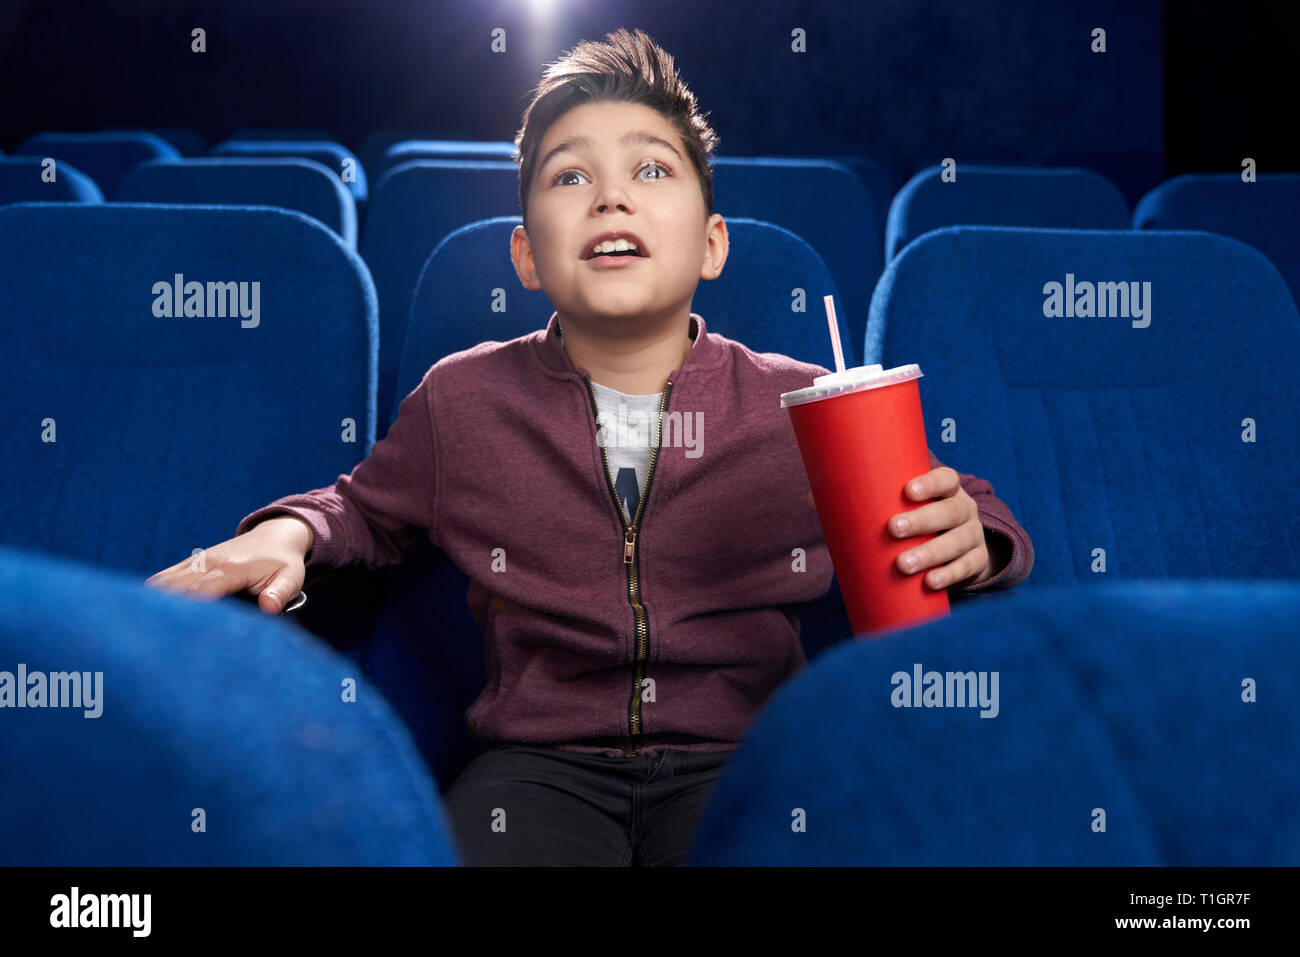 Schockiert, fasziniert Junge im Kino sitzen, am Bildschirm aufmerksam schauen mit geöffnetem Mund. Teenager halten roten Pappbecher mit Kohlensäure trinken. Stockfoto